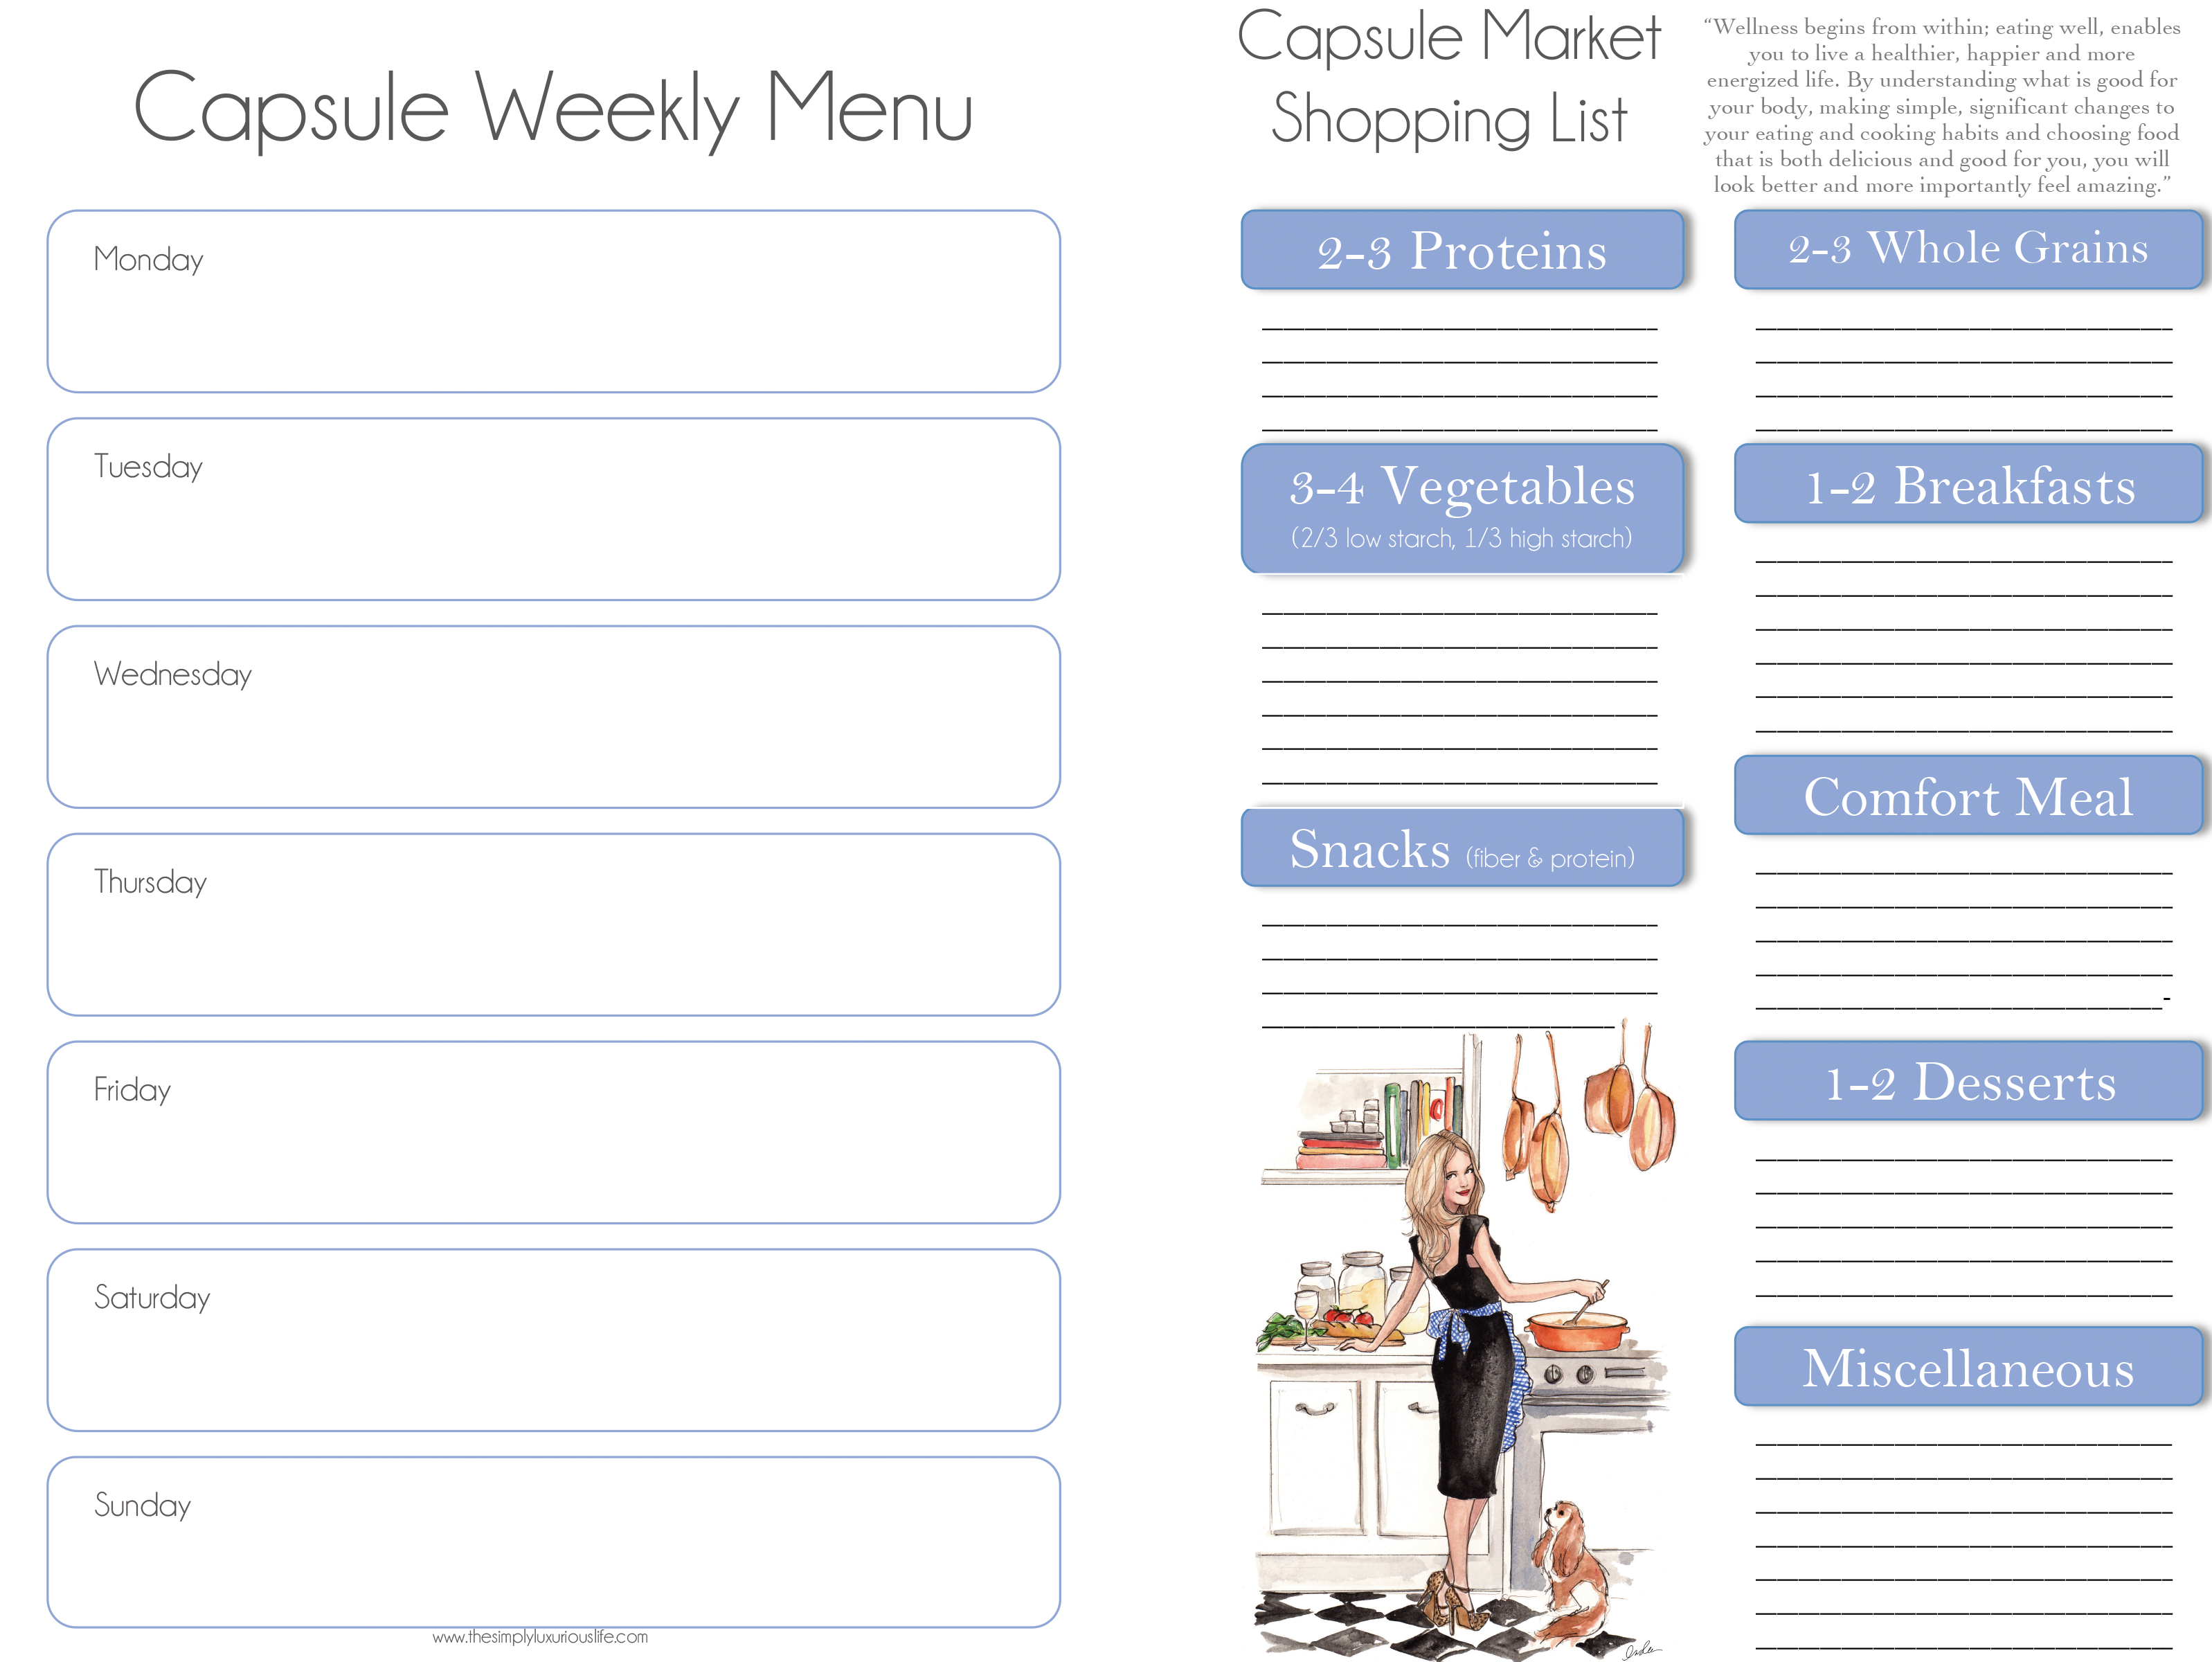 Capsule Weekly Menu: Download